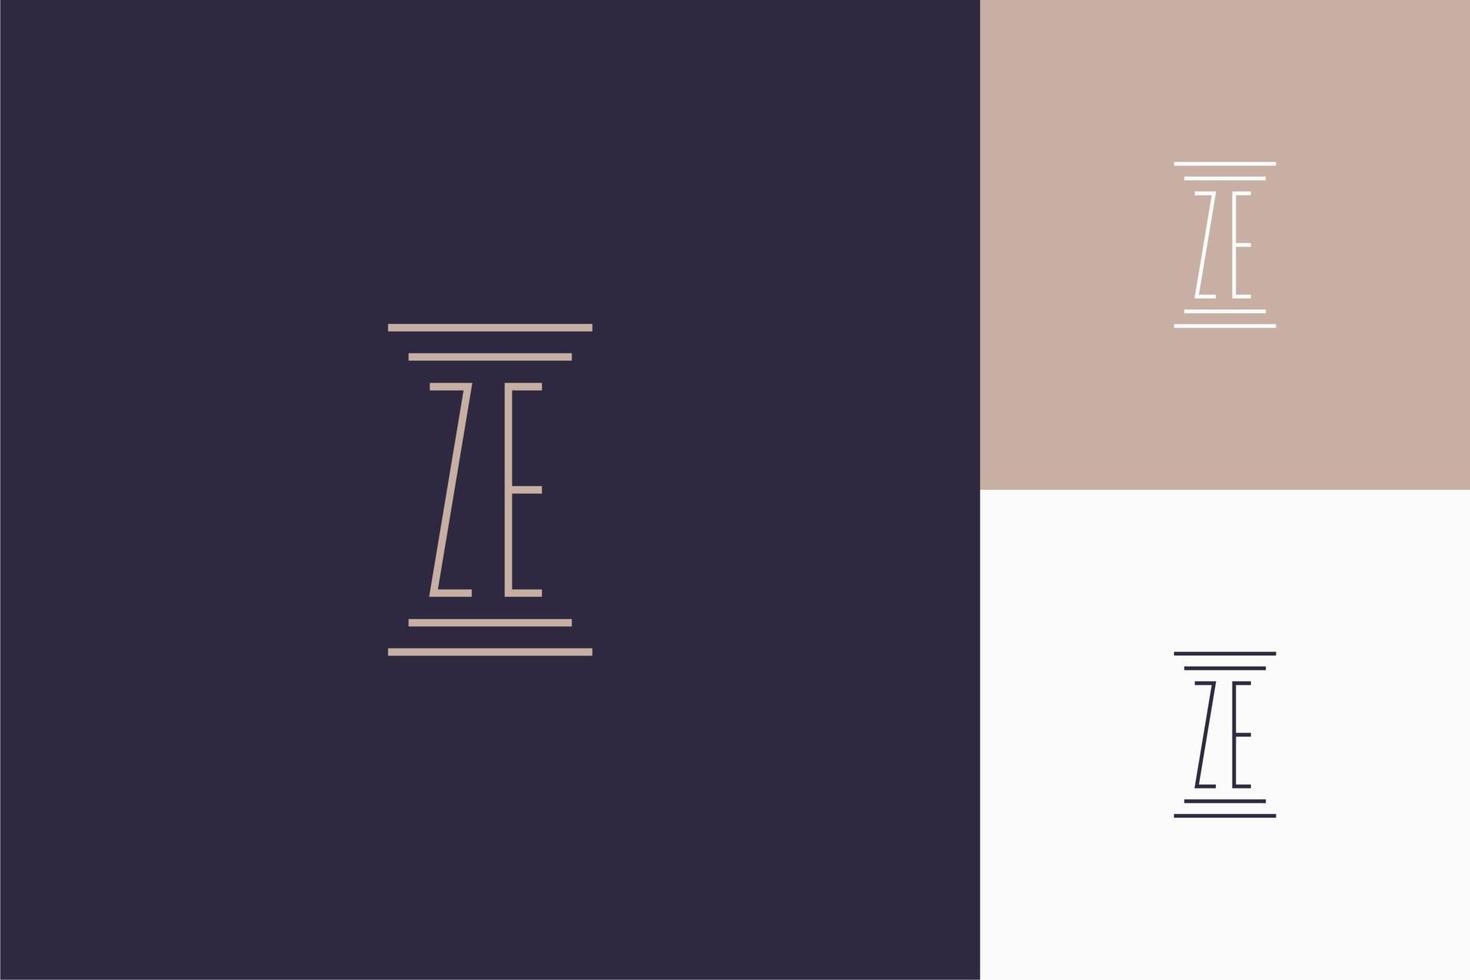 ze monogram initialer design för advokatbyråns logotyp vektor